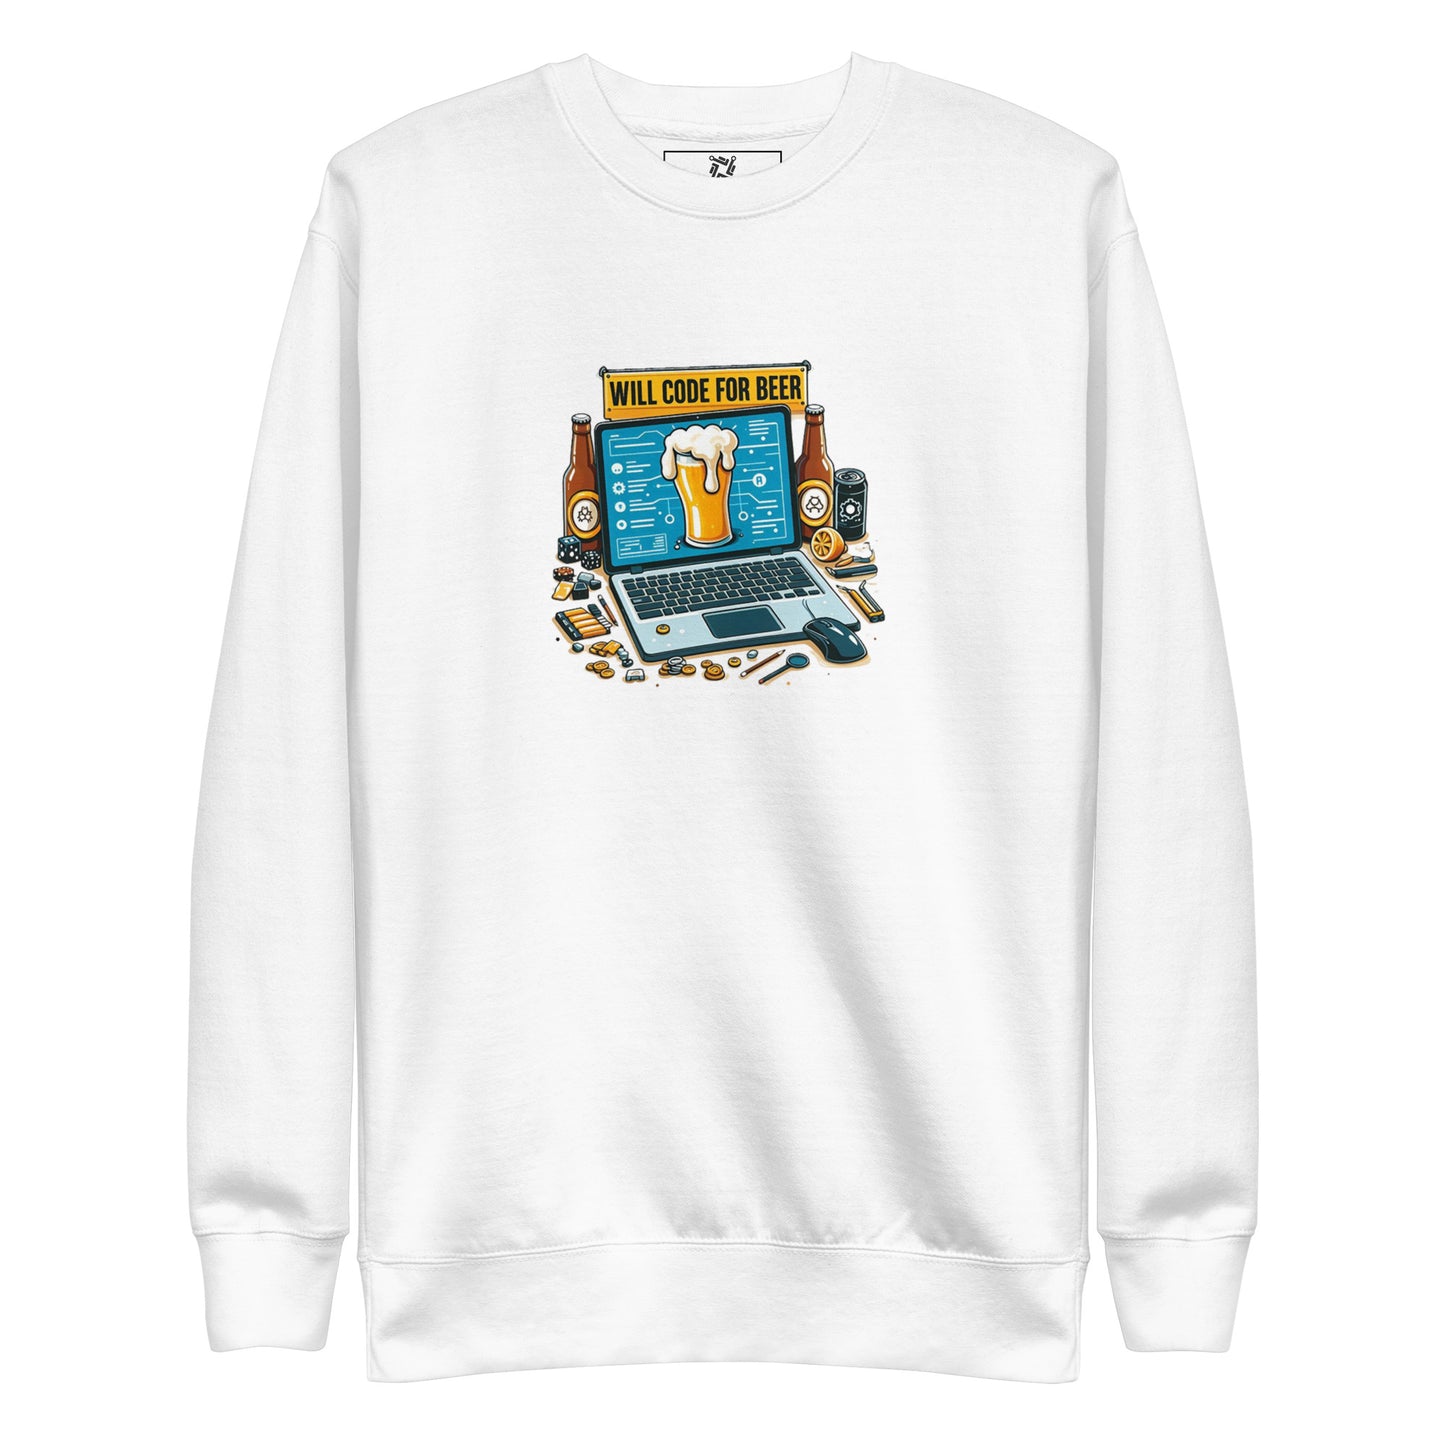 Code For Beer Sweatshirt